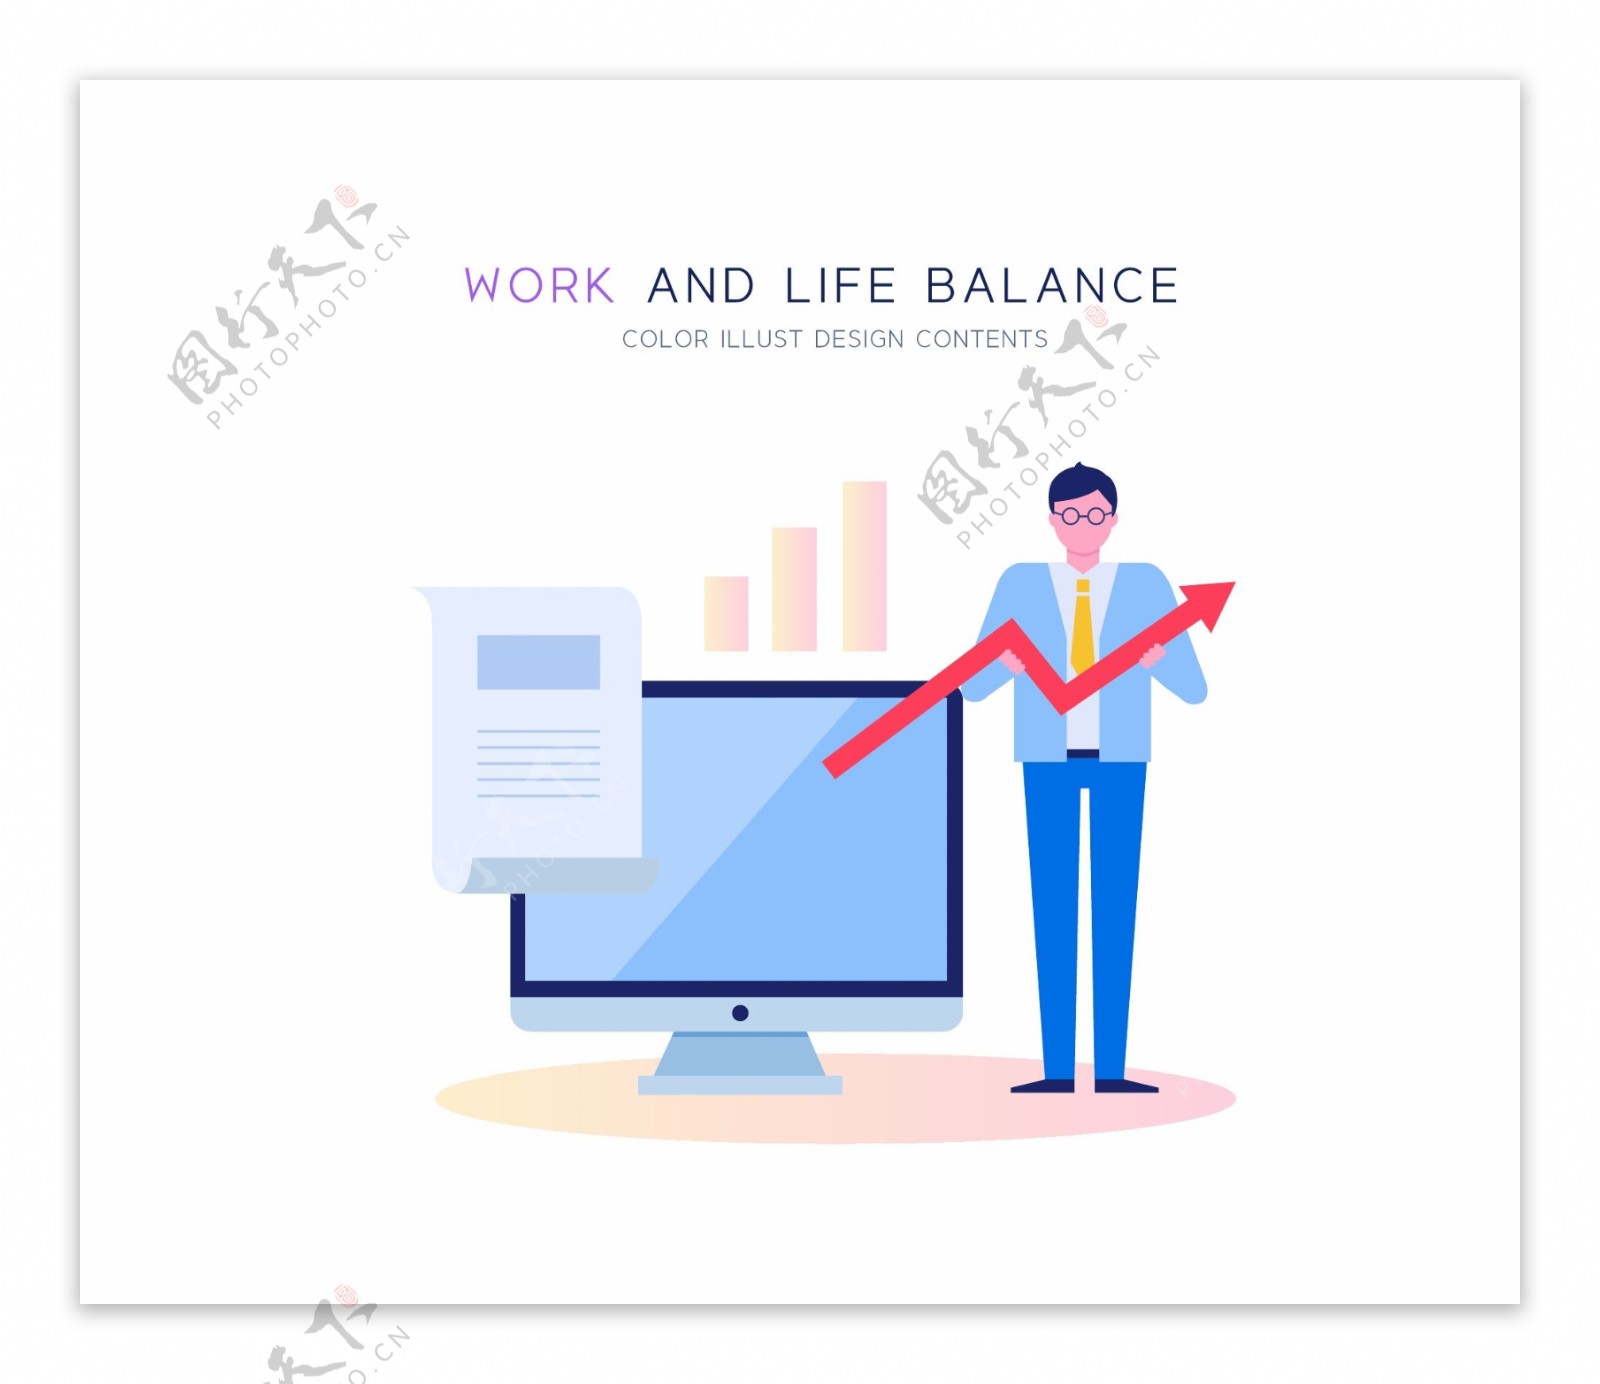 工作生活平衡